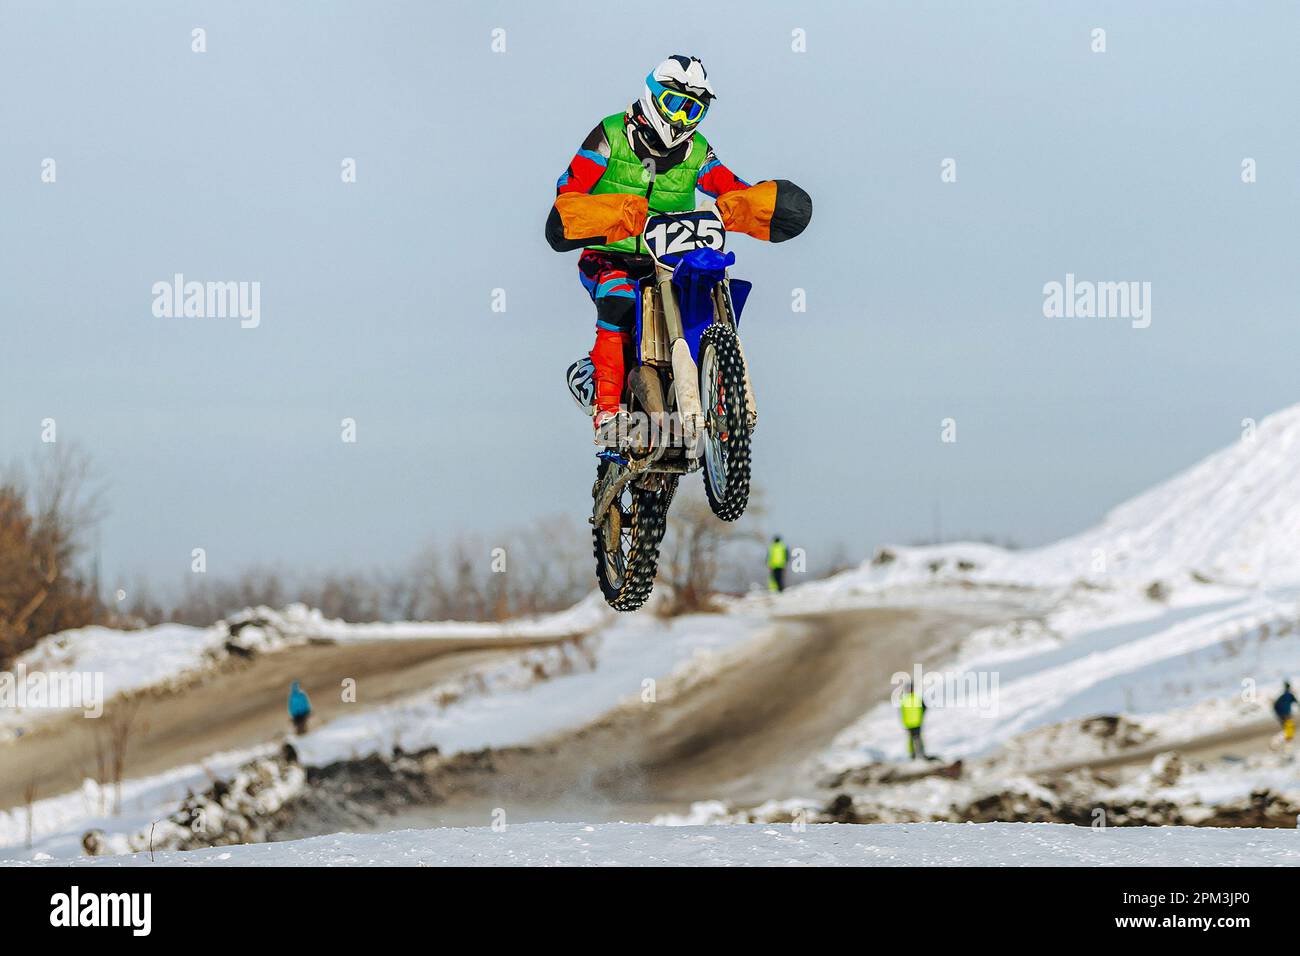 motocross-Fahrer, der auf einem verschneiten Sprungbrett springt, winterliche Off-Road-Motorradrennen Stockfoto